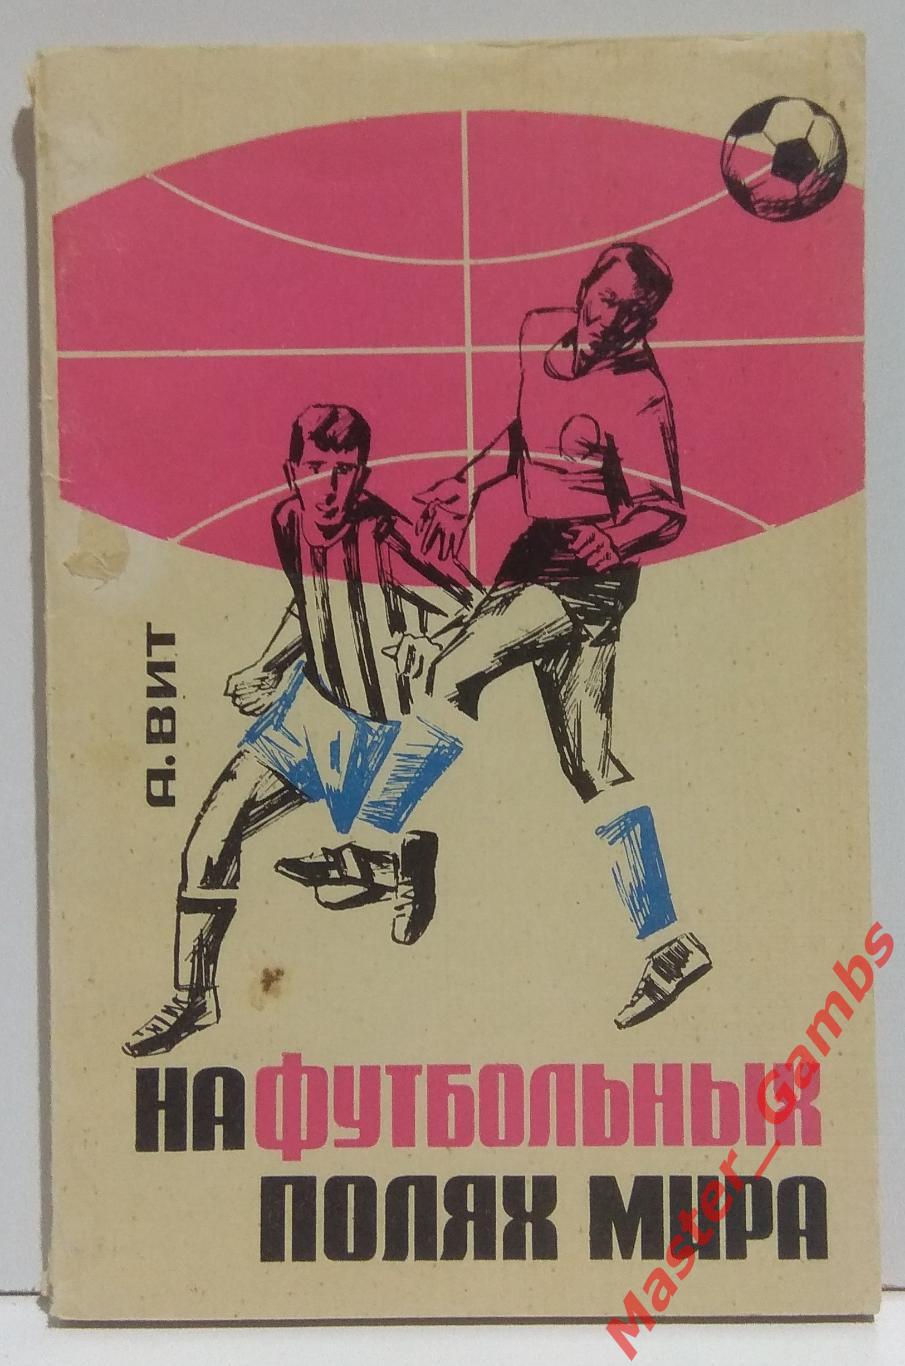 вит - на футбольных полях мира (москва фис) 1966*